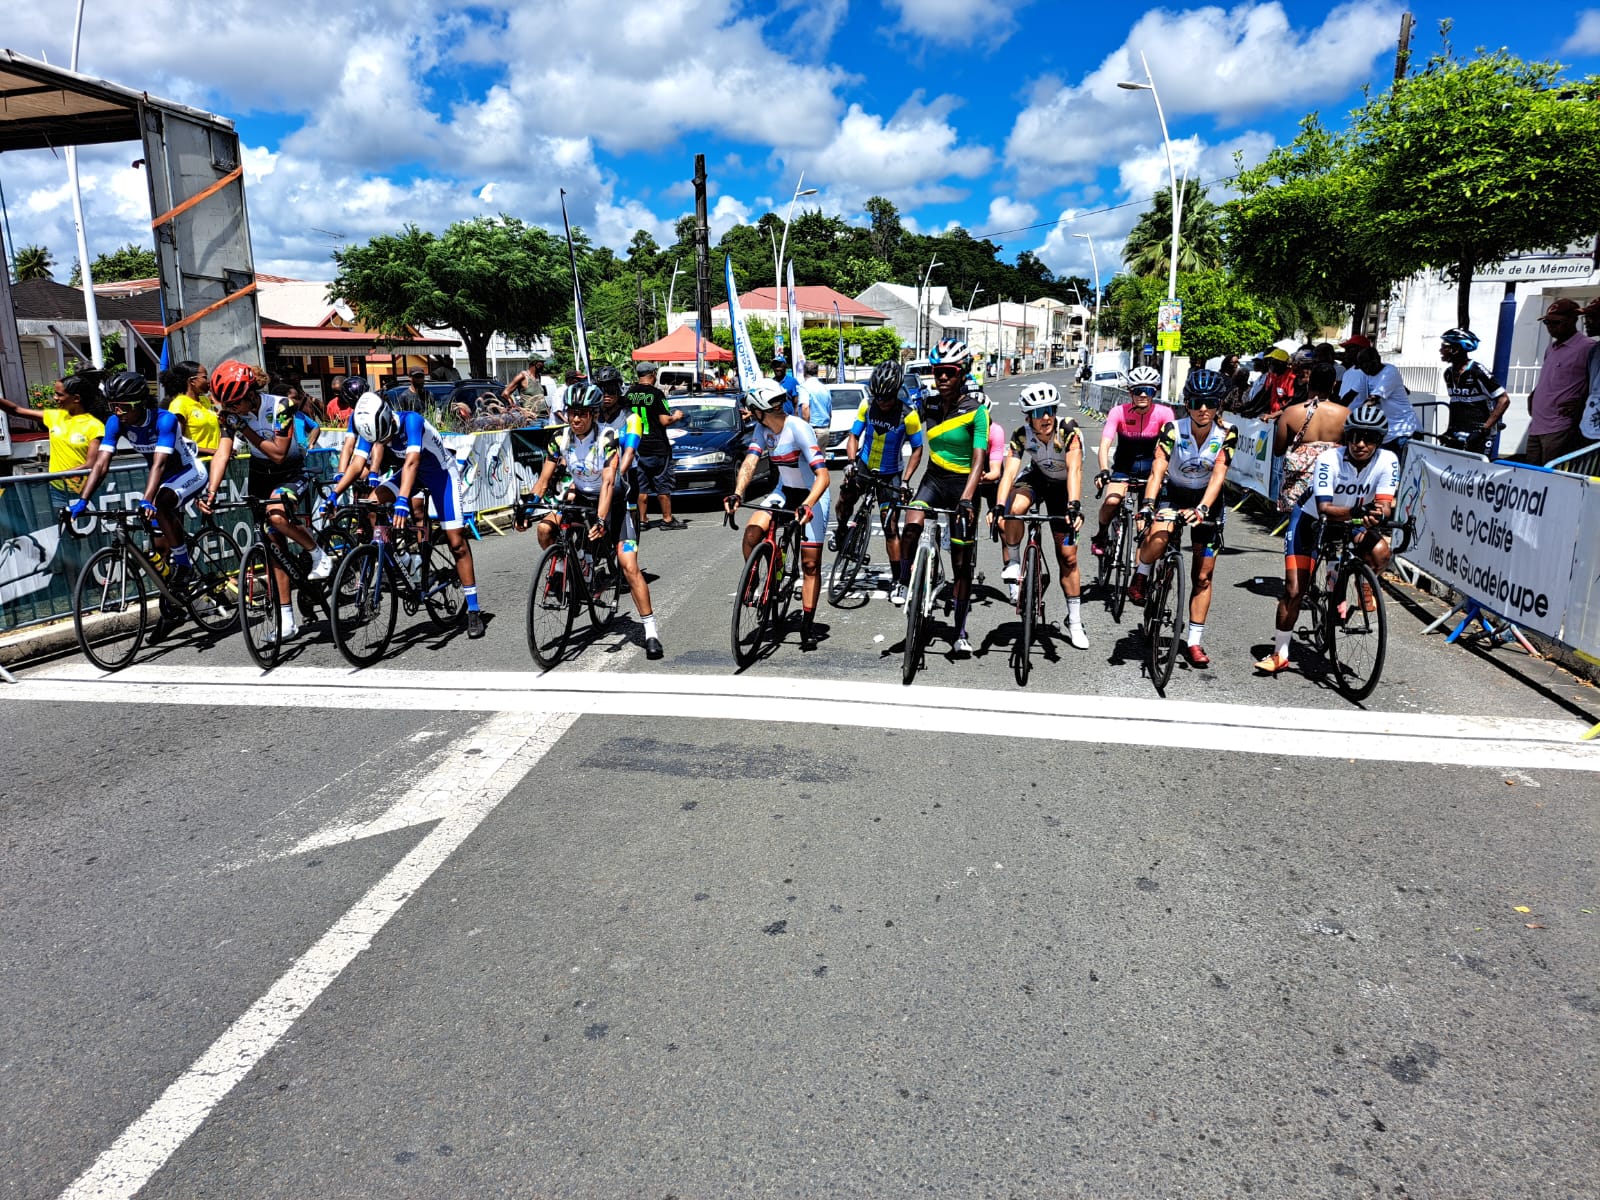     Le cyclisme guadeloupéen termine en force les championnats de la Caraïbe

